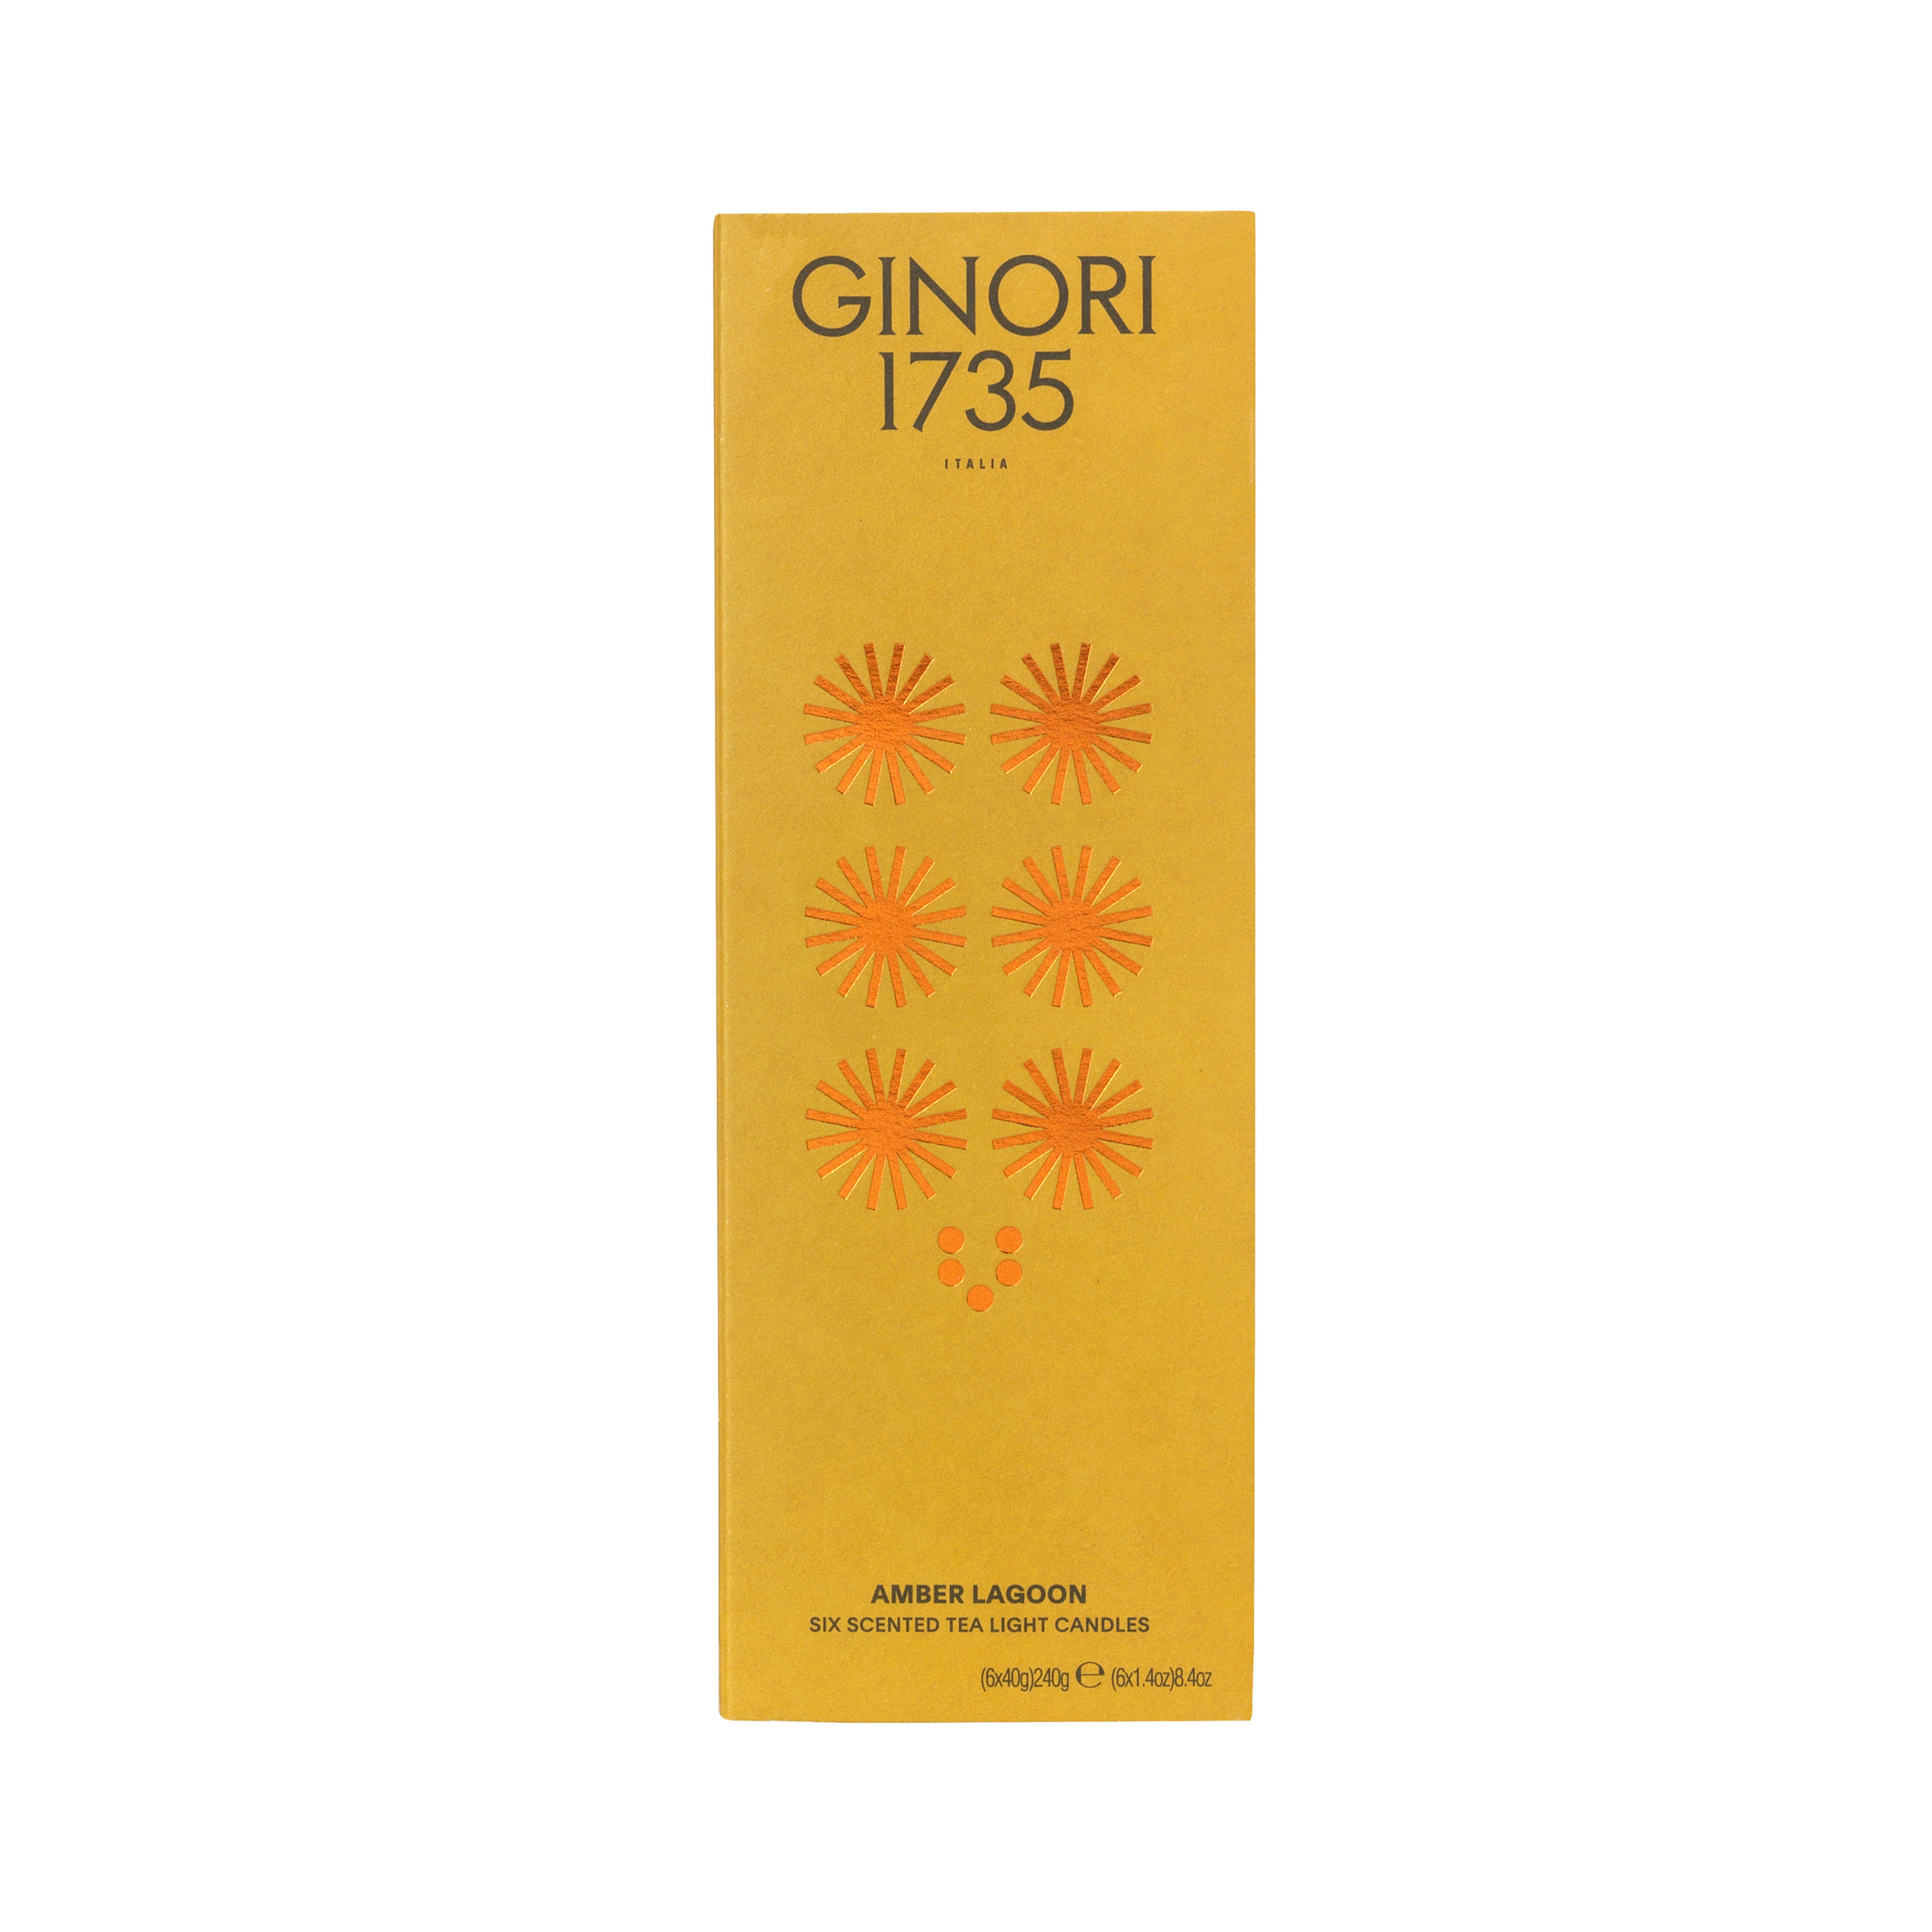 Ginori 1735 LCDC Il Letterato Amber Lagoon Votive Candles - 6 x 40g